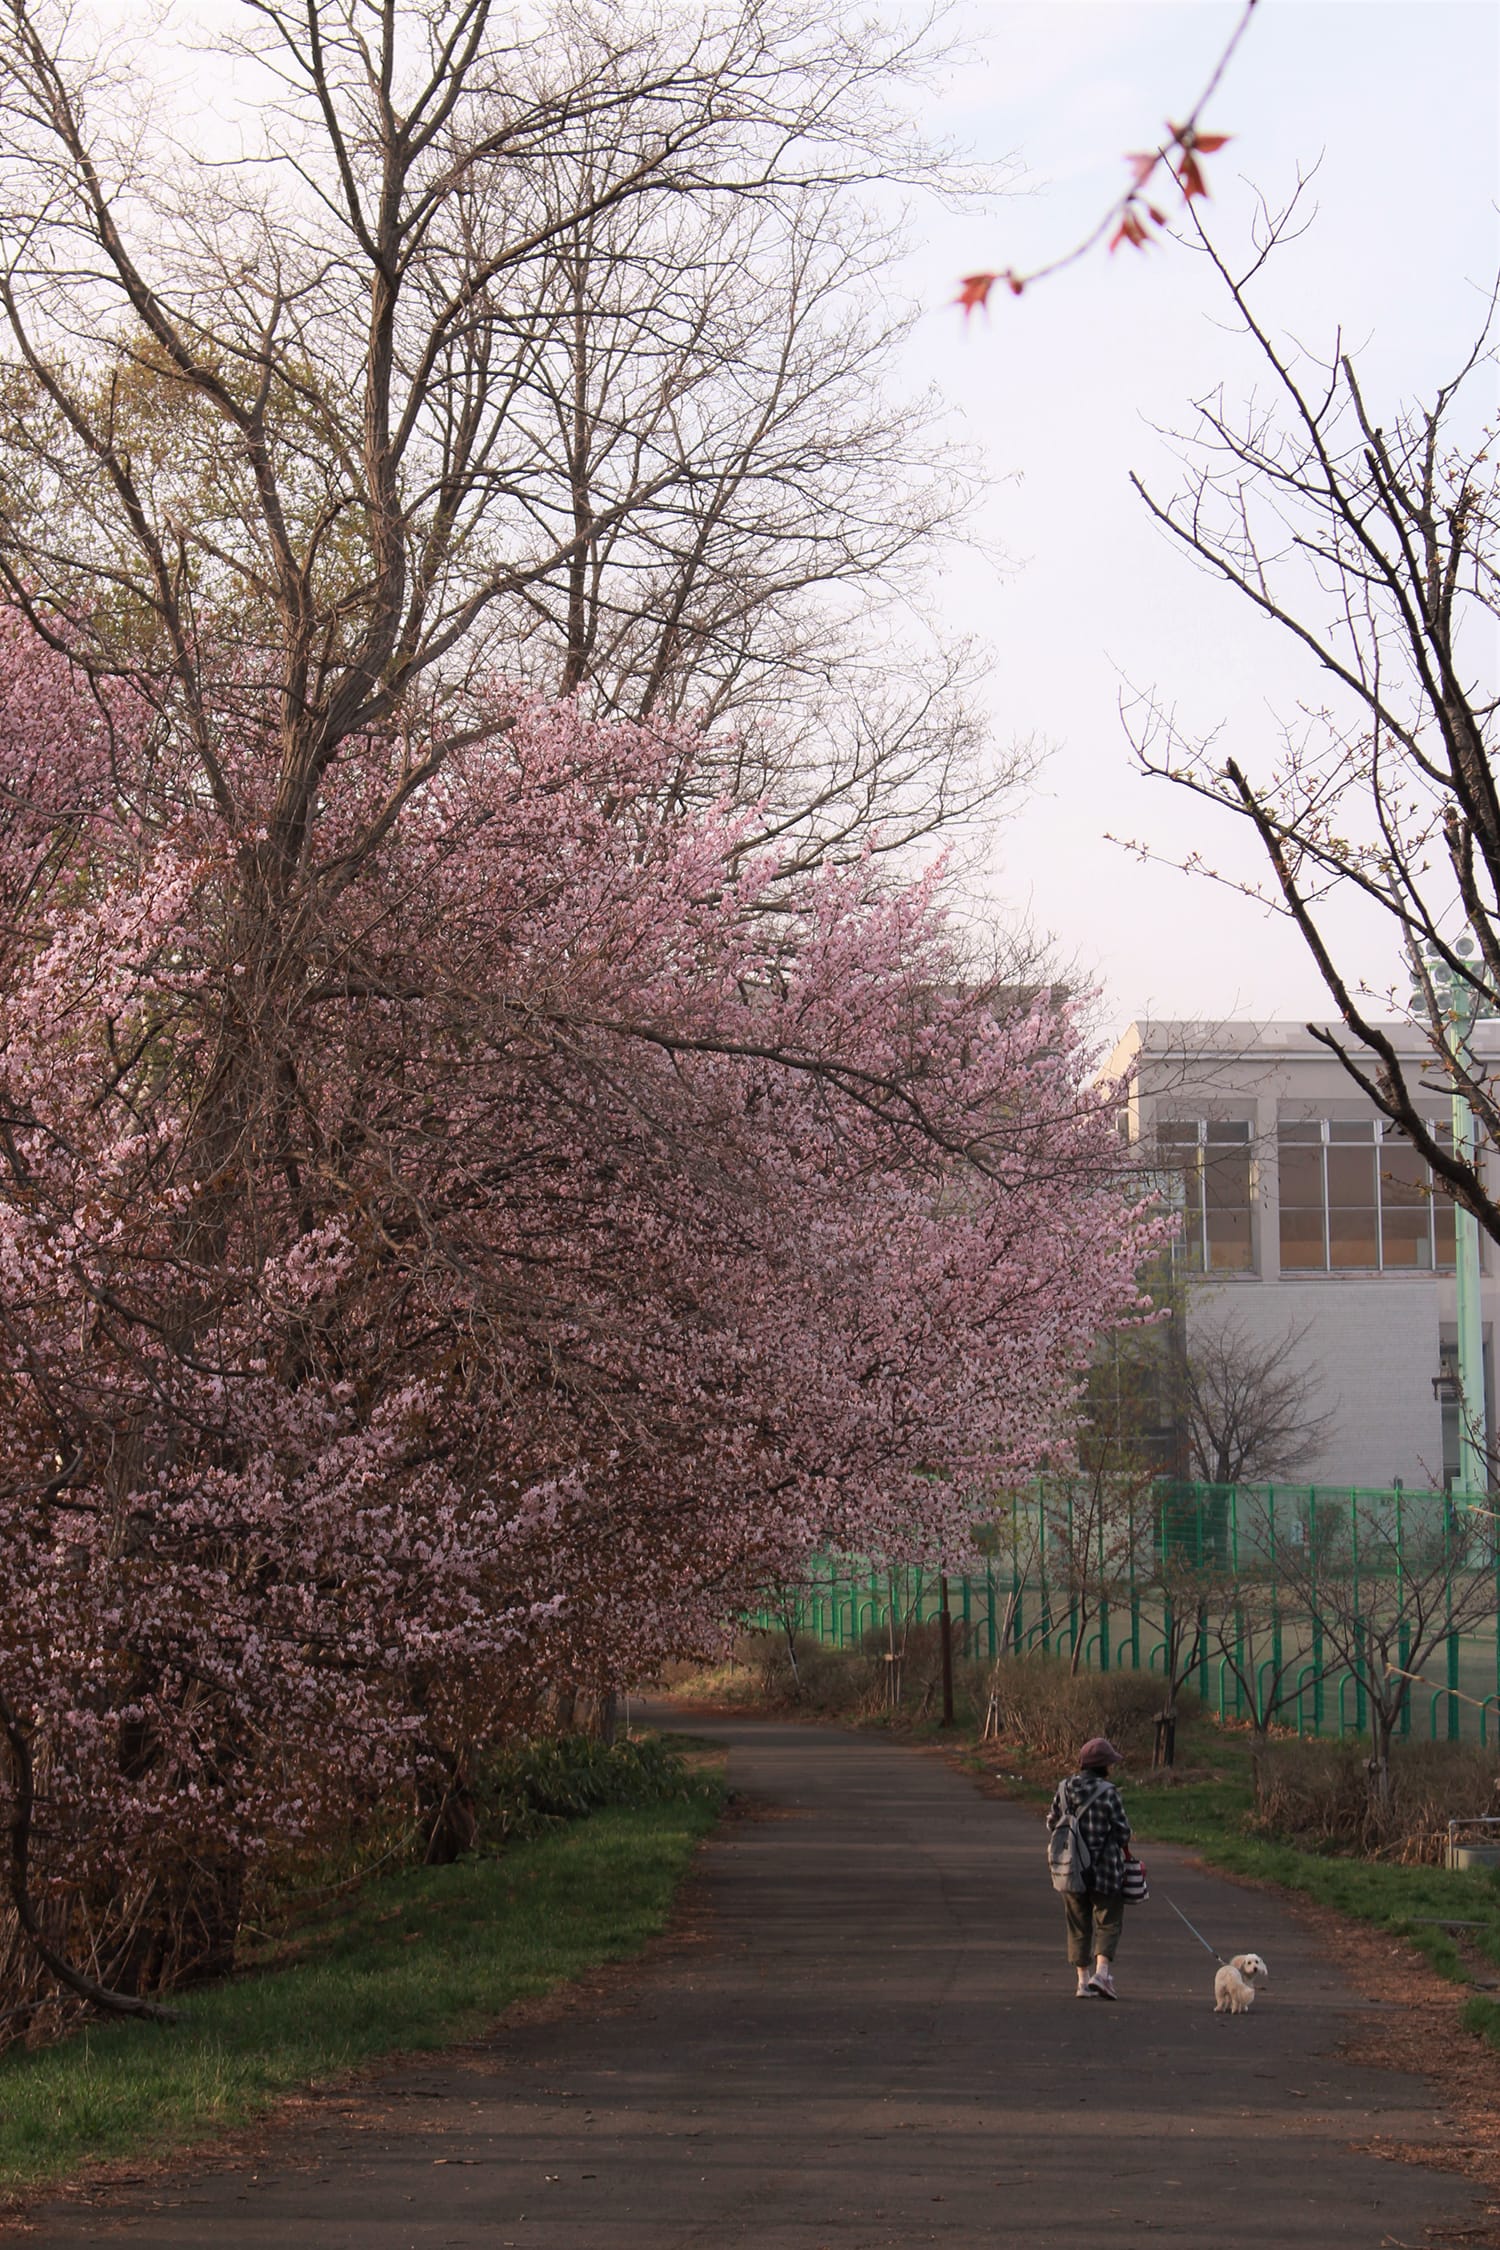 桜の散歩コース。犬が楽しそうに飼い主さんと歩いていました。こっちを振り返ってくれて、とても可愛らしいです。